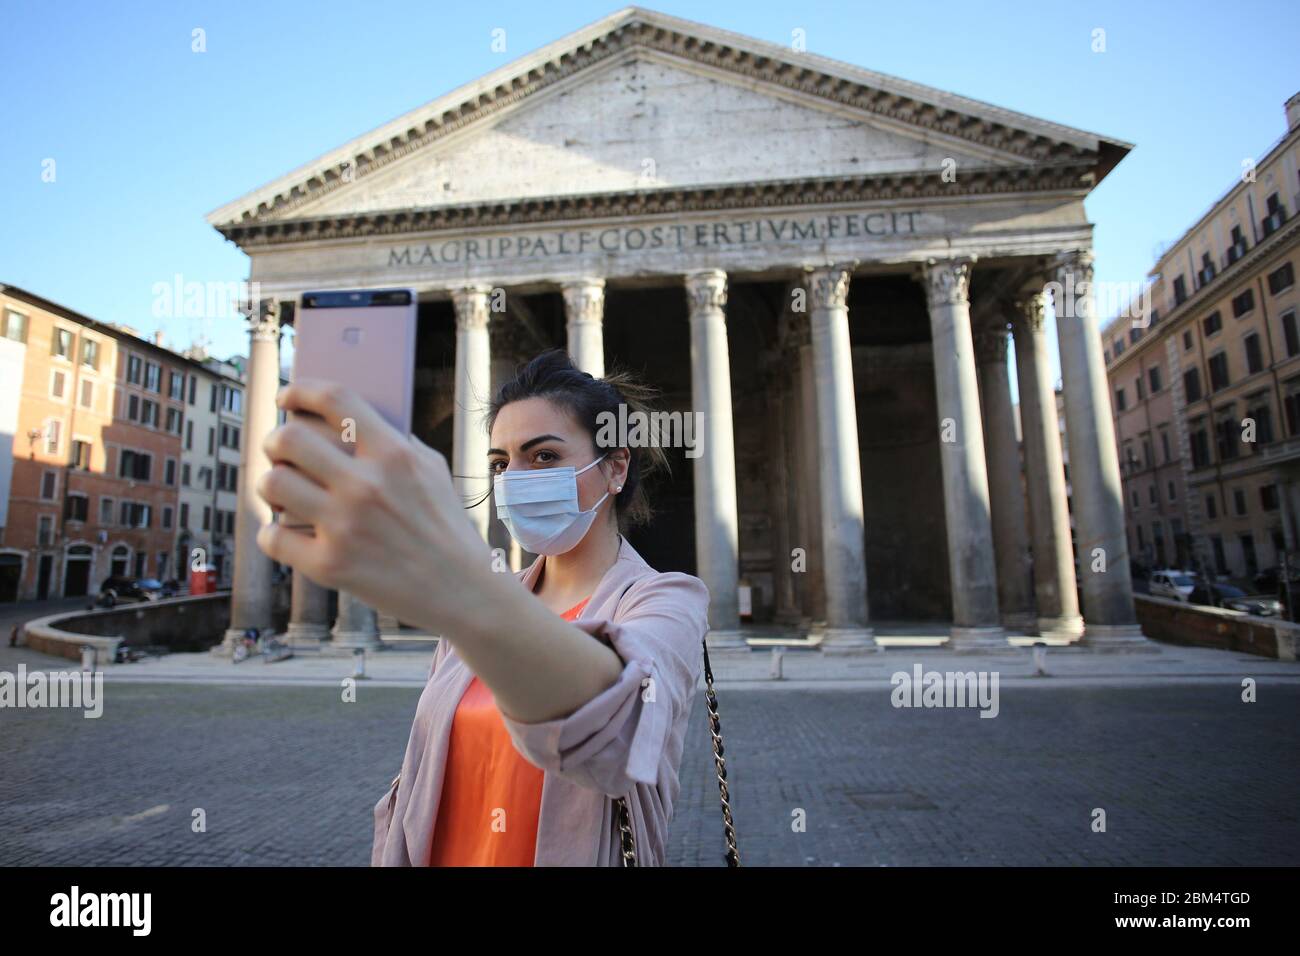 Italien. Mai 2020. Roma, Italy 6 maggio 2020: Ragazza con la mascherina protettiva si scatta una Selfie in Piazza del Pantheon a Roma, durante la fase 2 dell'emergenza Covid-19, dopo due mesi di quarantena nella città di Roma. Quelle: Unabhängige Fotoagentur/Alamy Live News Stockfoto